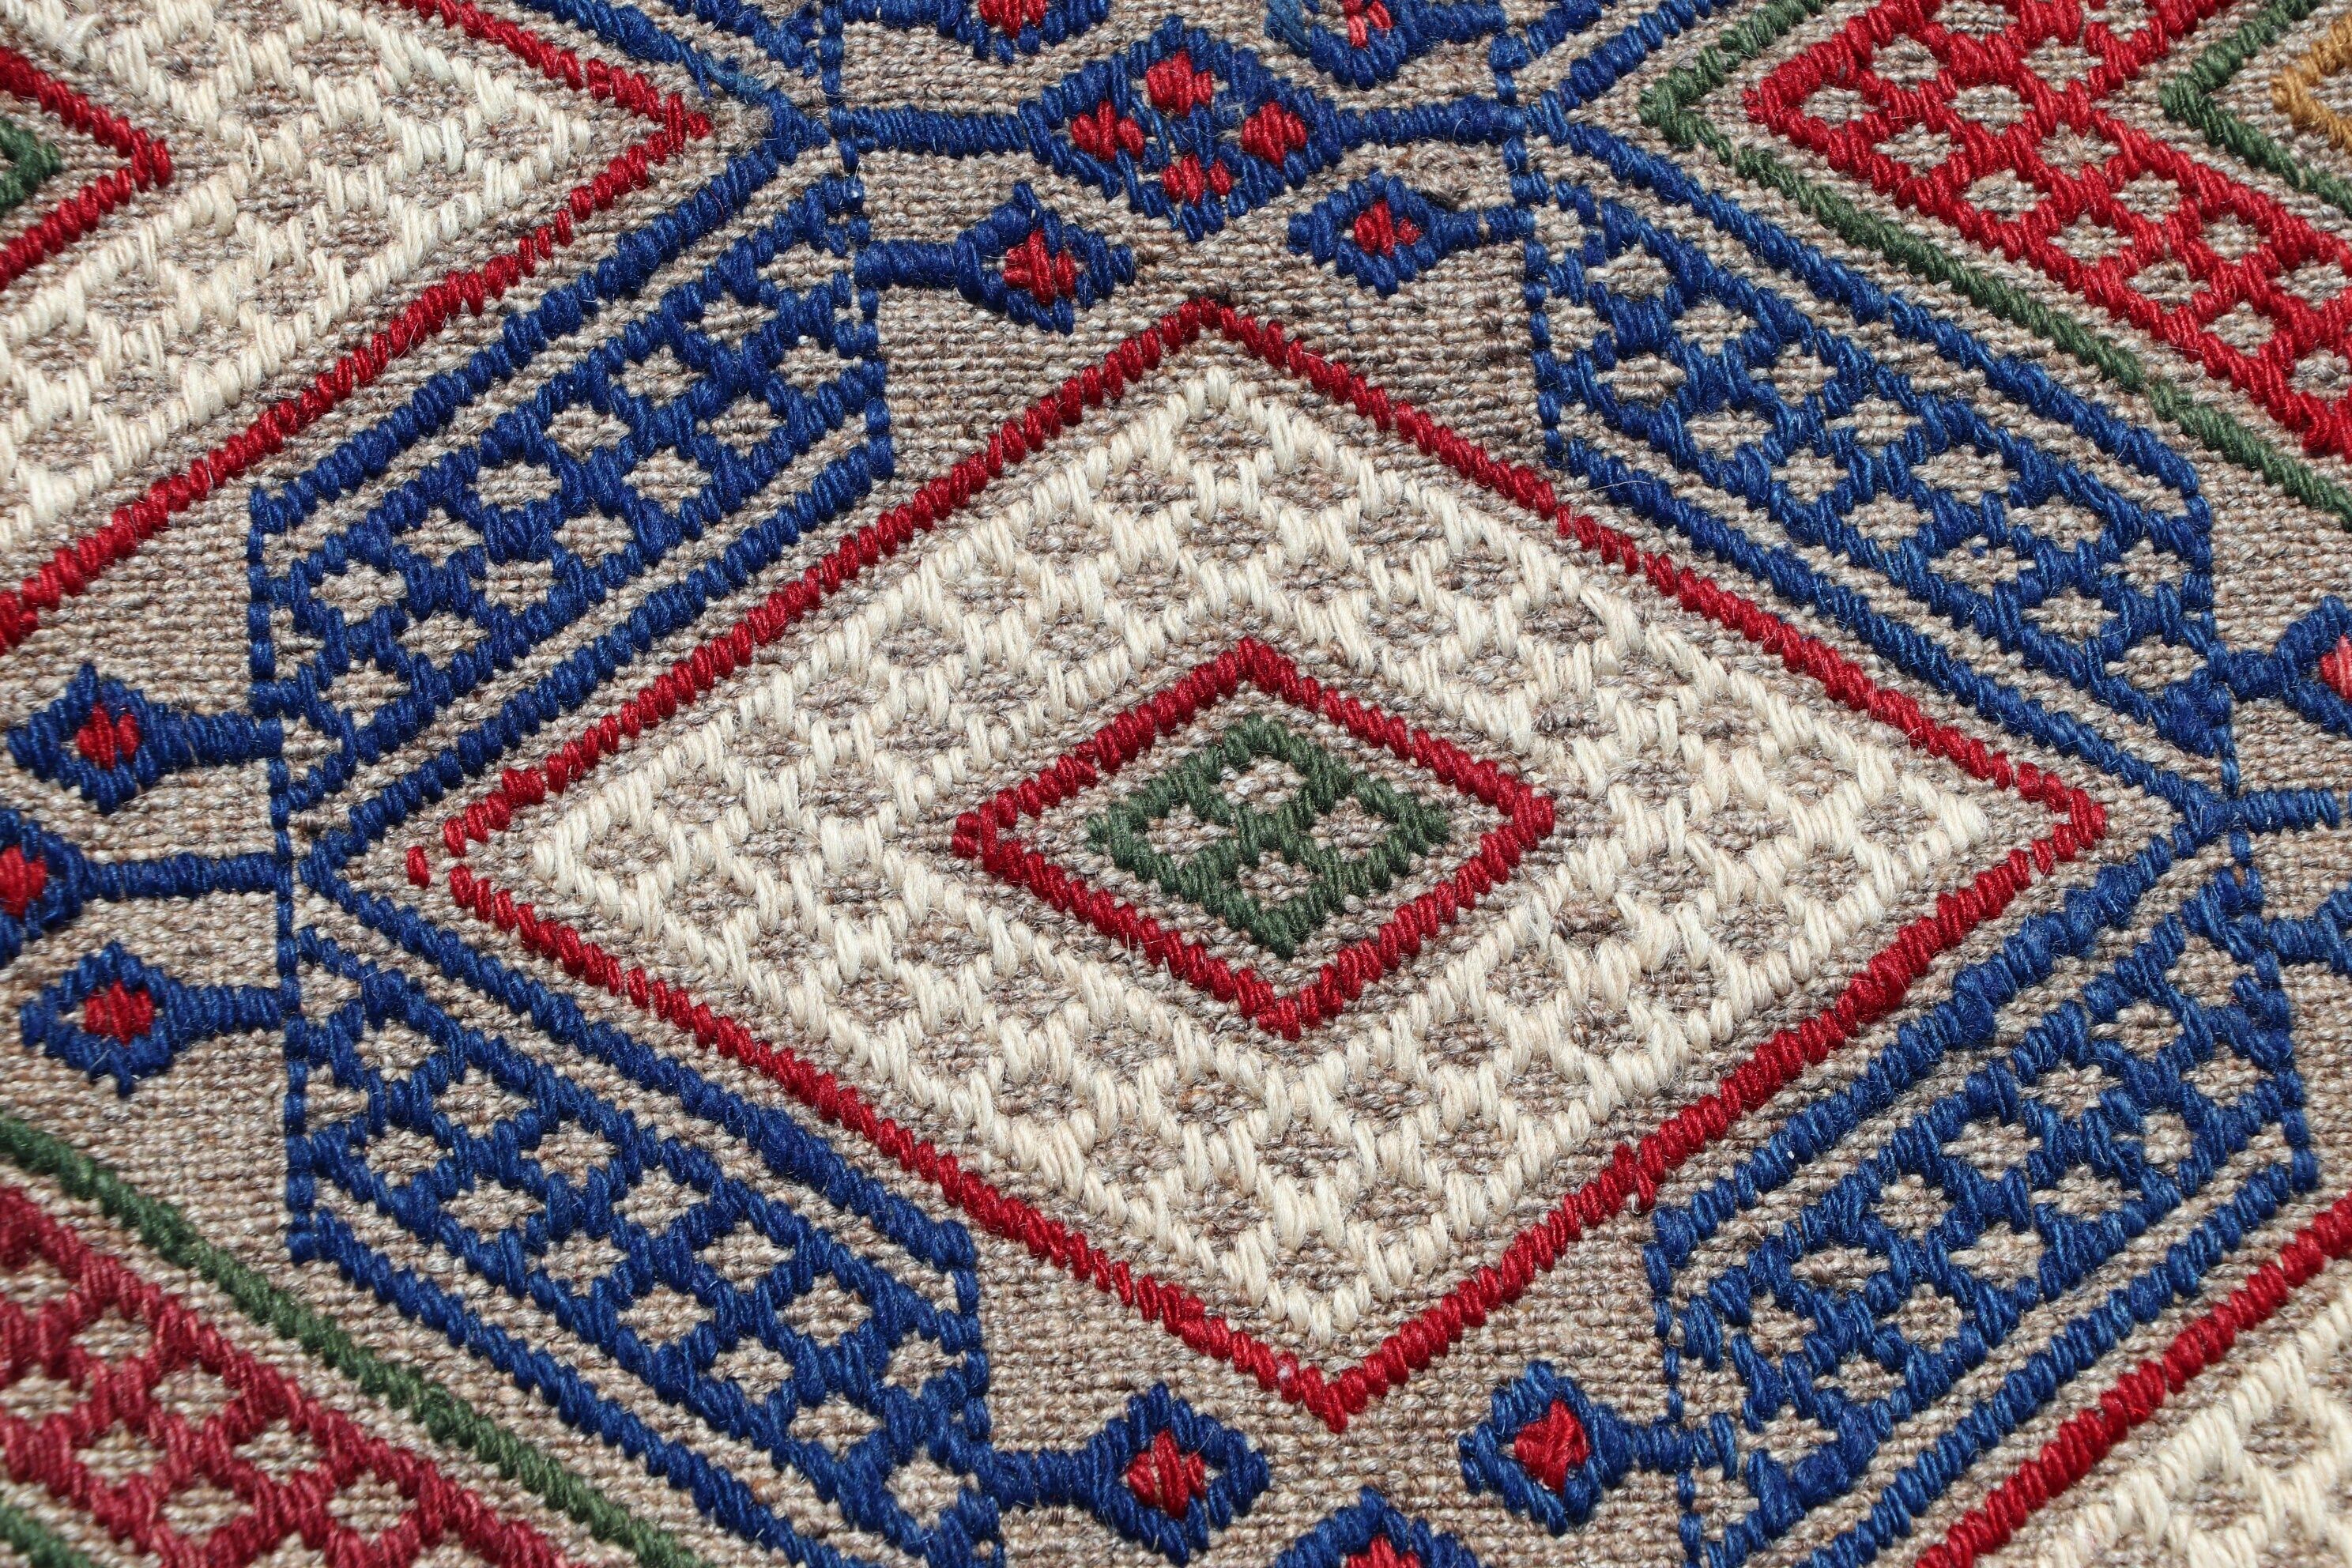 Oushak Rugs, Vintage Rug, 4.2x5.7 ft Accent Rug, Ethnic Rug, Antique Rugs, Blue Oriental Rugs, Bedroom Rugs, Turkish Rugs, Nursery Rug